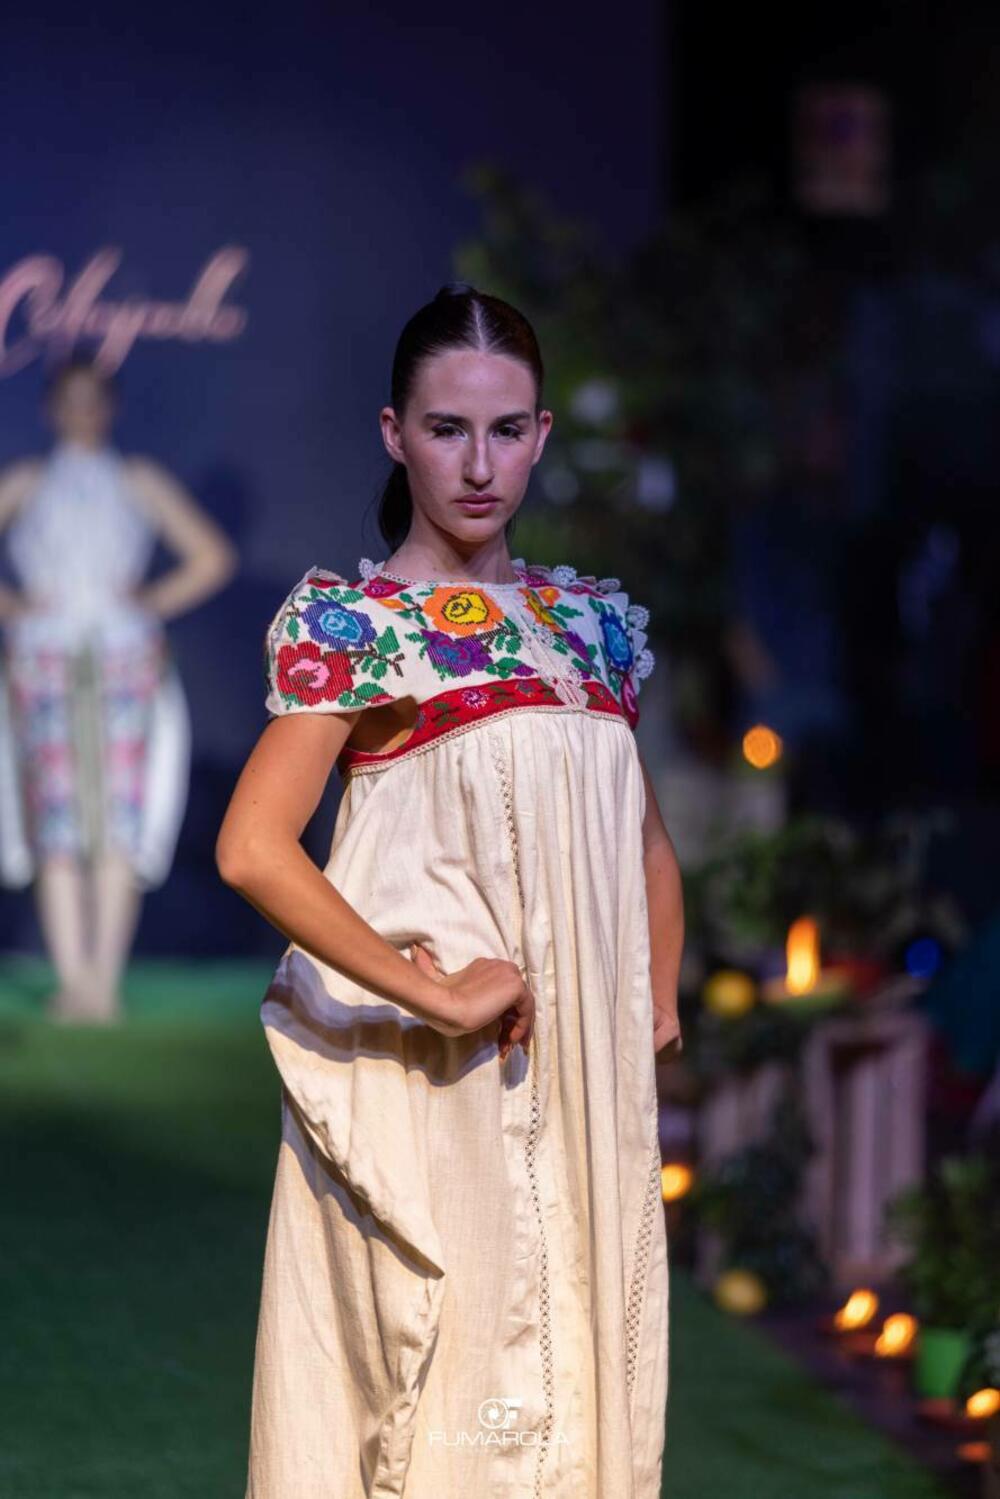 <p>Crnogorska modna dizajnerka Marina Banović, prenosi utiske sa predstavljanja modela u Italiji, a otkriva i planove za prikazivanje kolekcija u Crnoj Gori</p>